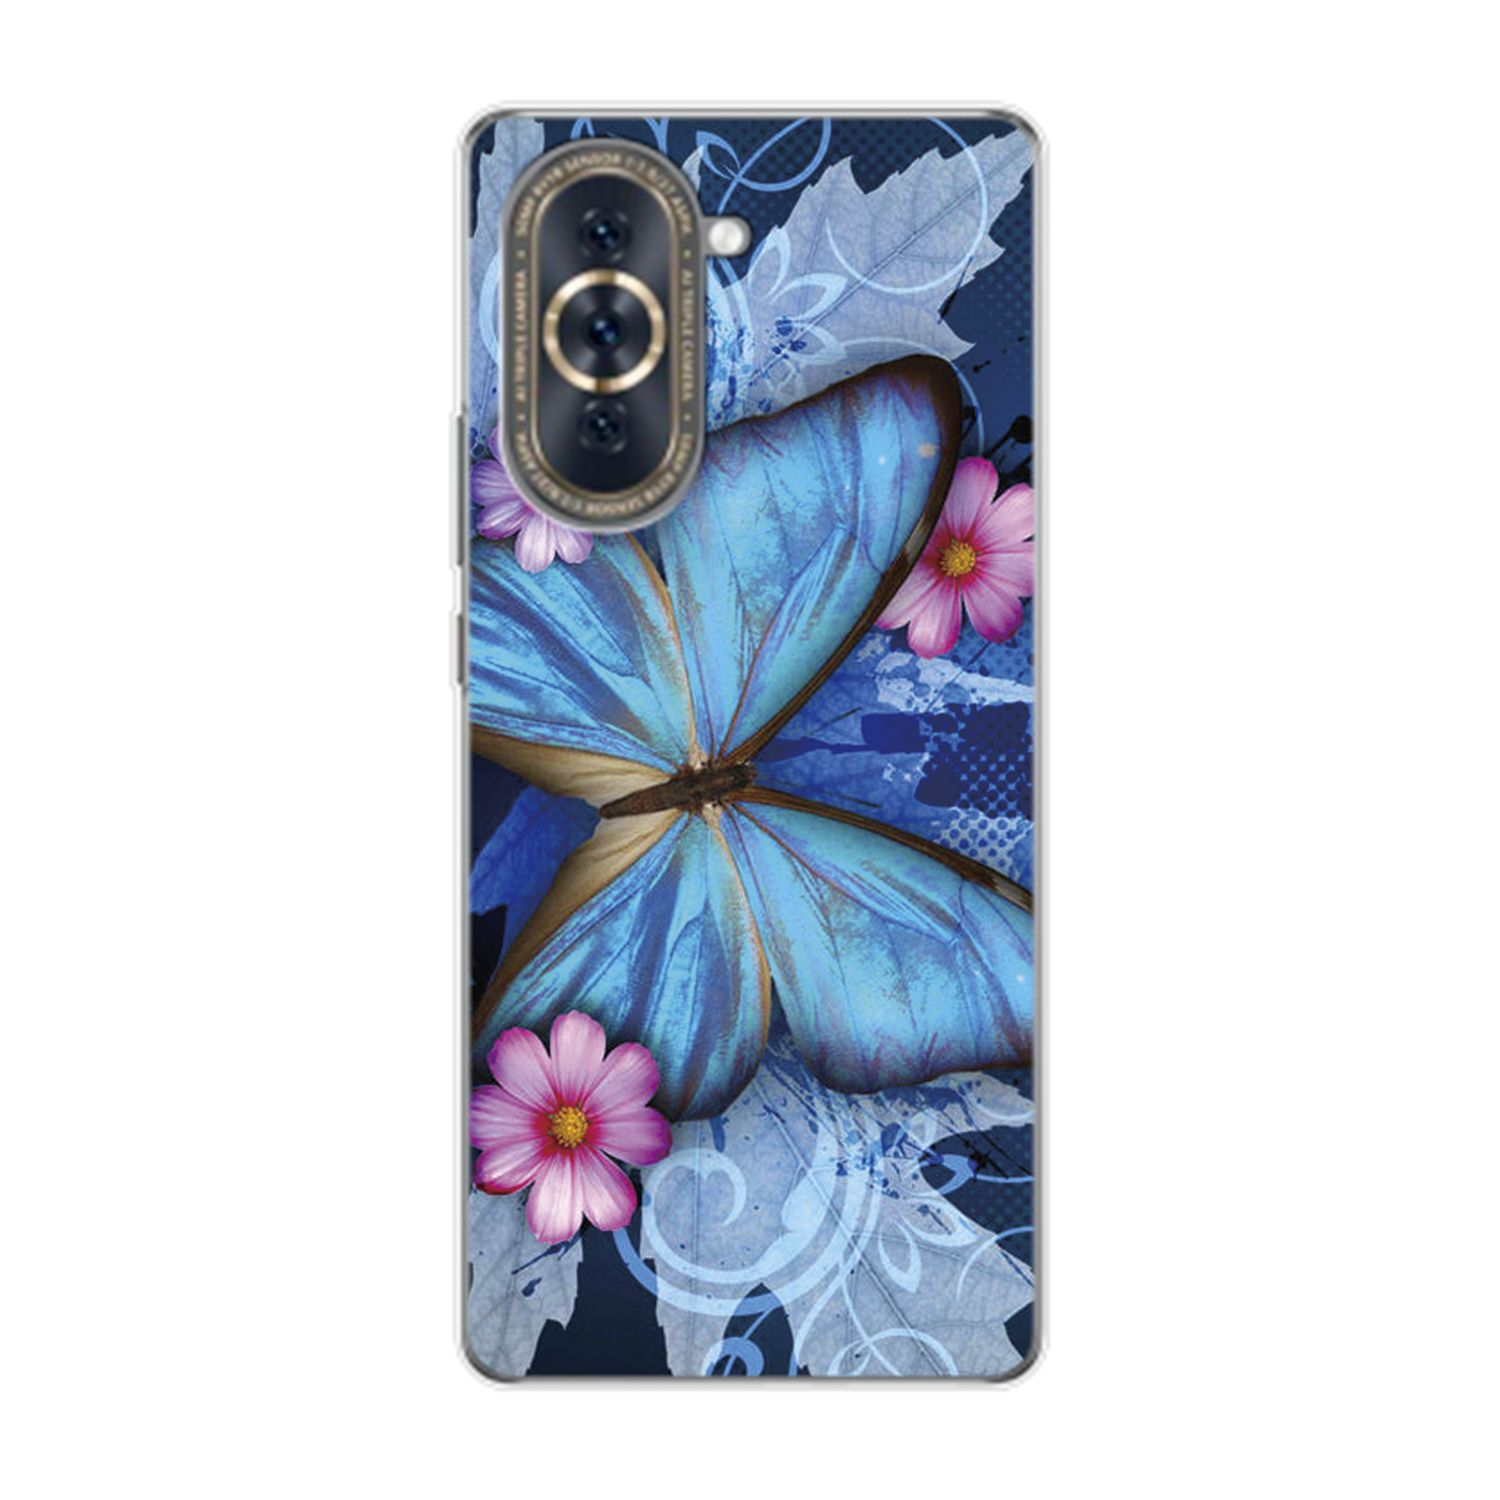 KÖNIG nova DESIGN Schmetterling Case, 10, Backcover, Blau Huawei,